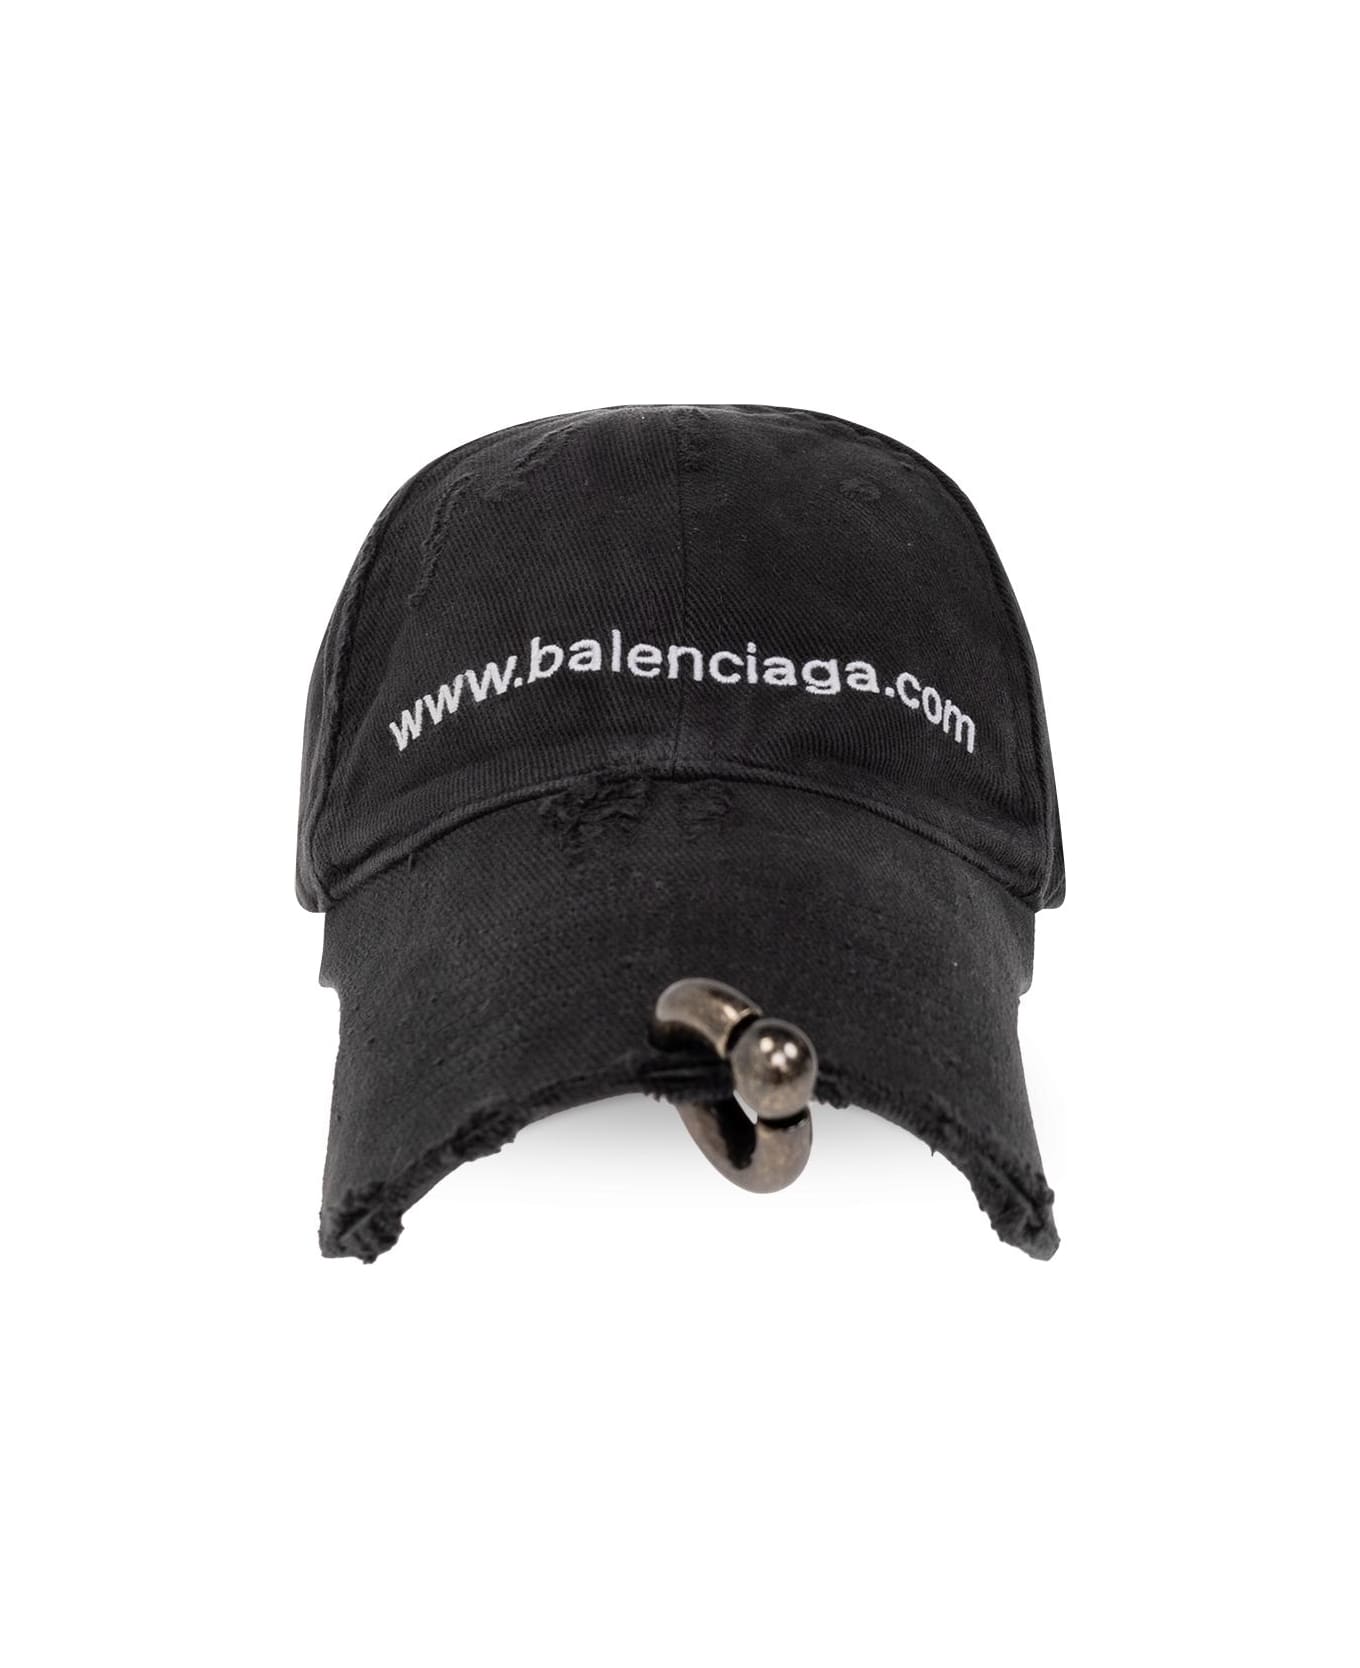 Balenciaga Front Piercing Cap - NERO 帽子